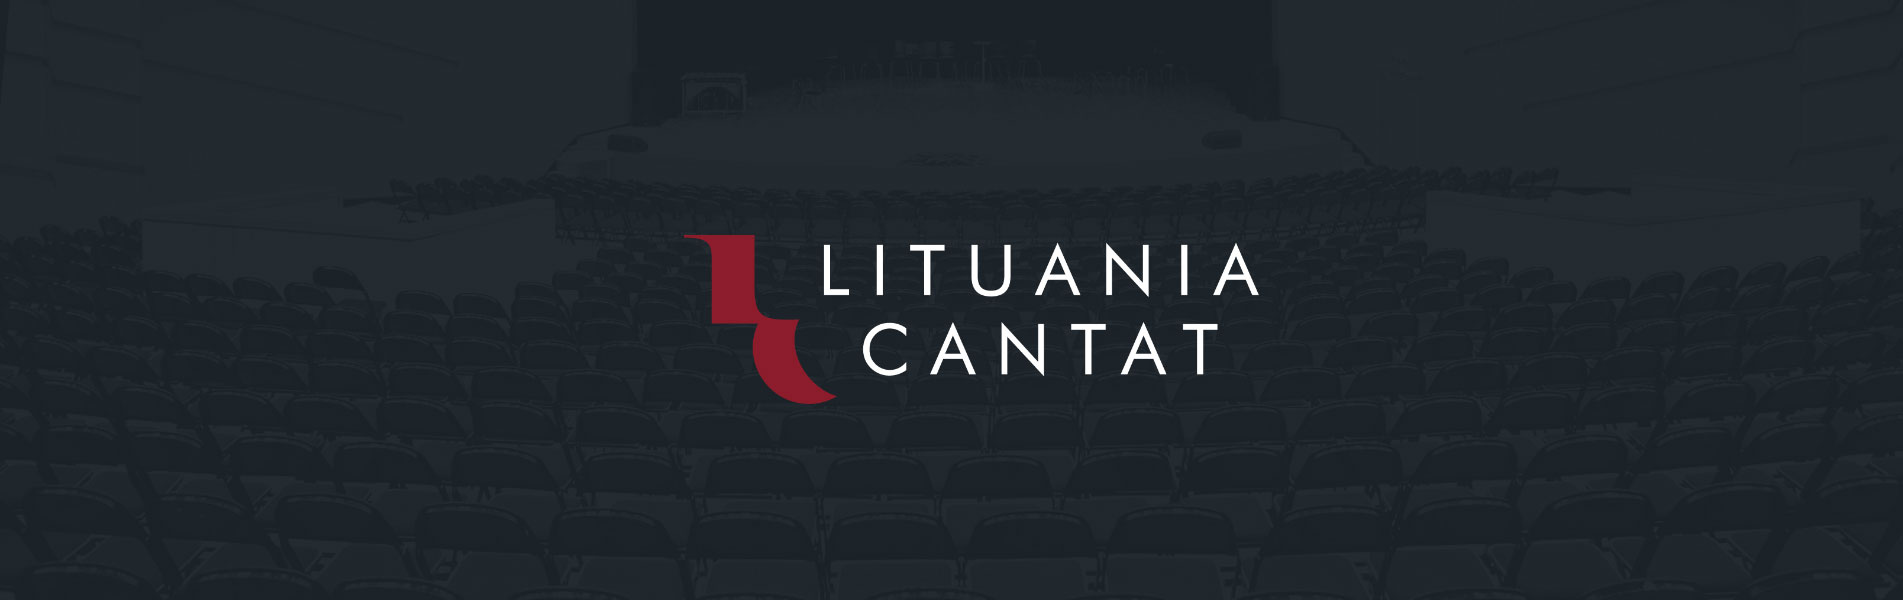 Lituania Cantat